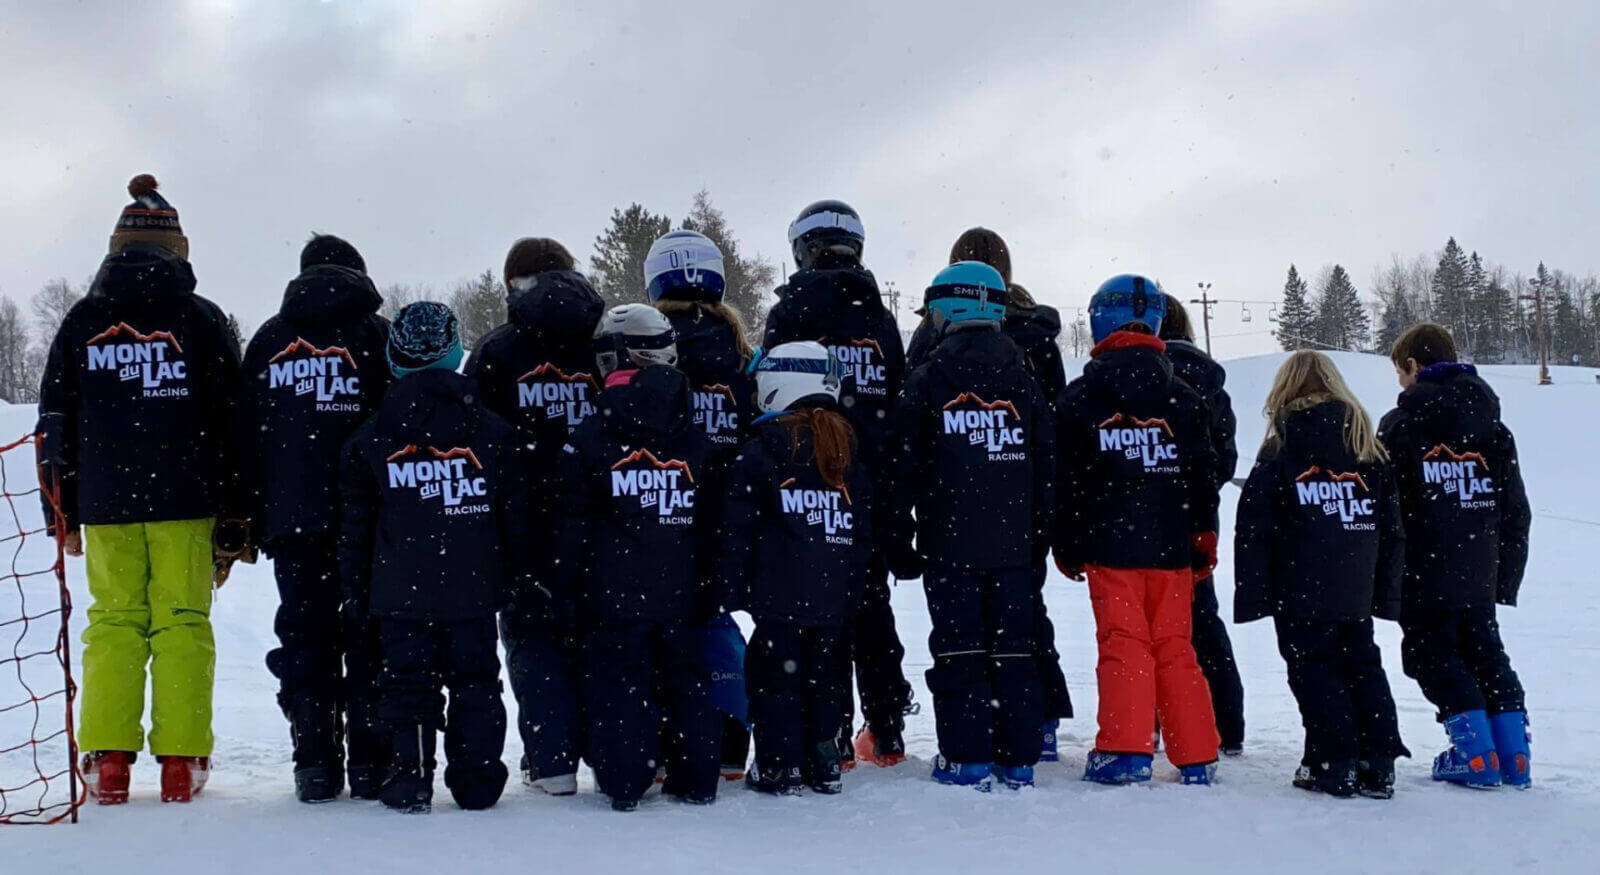 Mont du Lac branded ski jackets